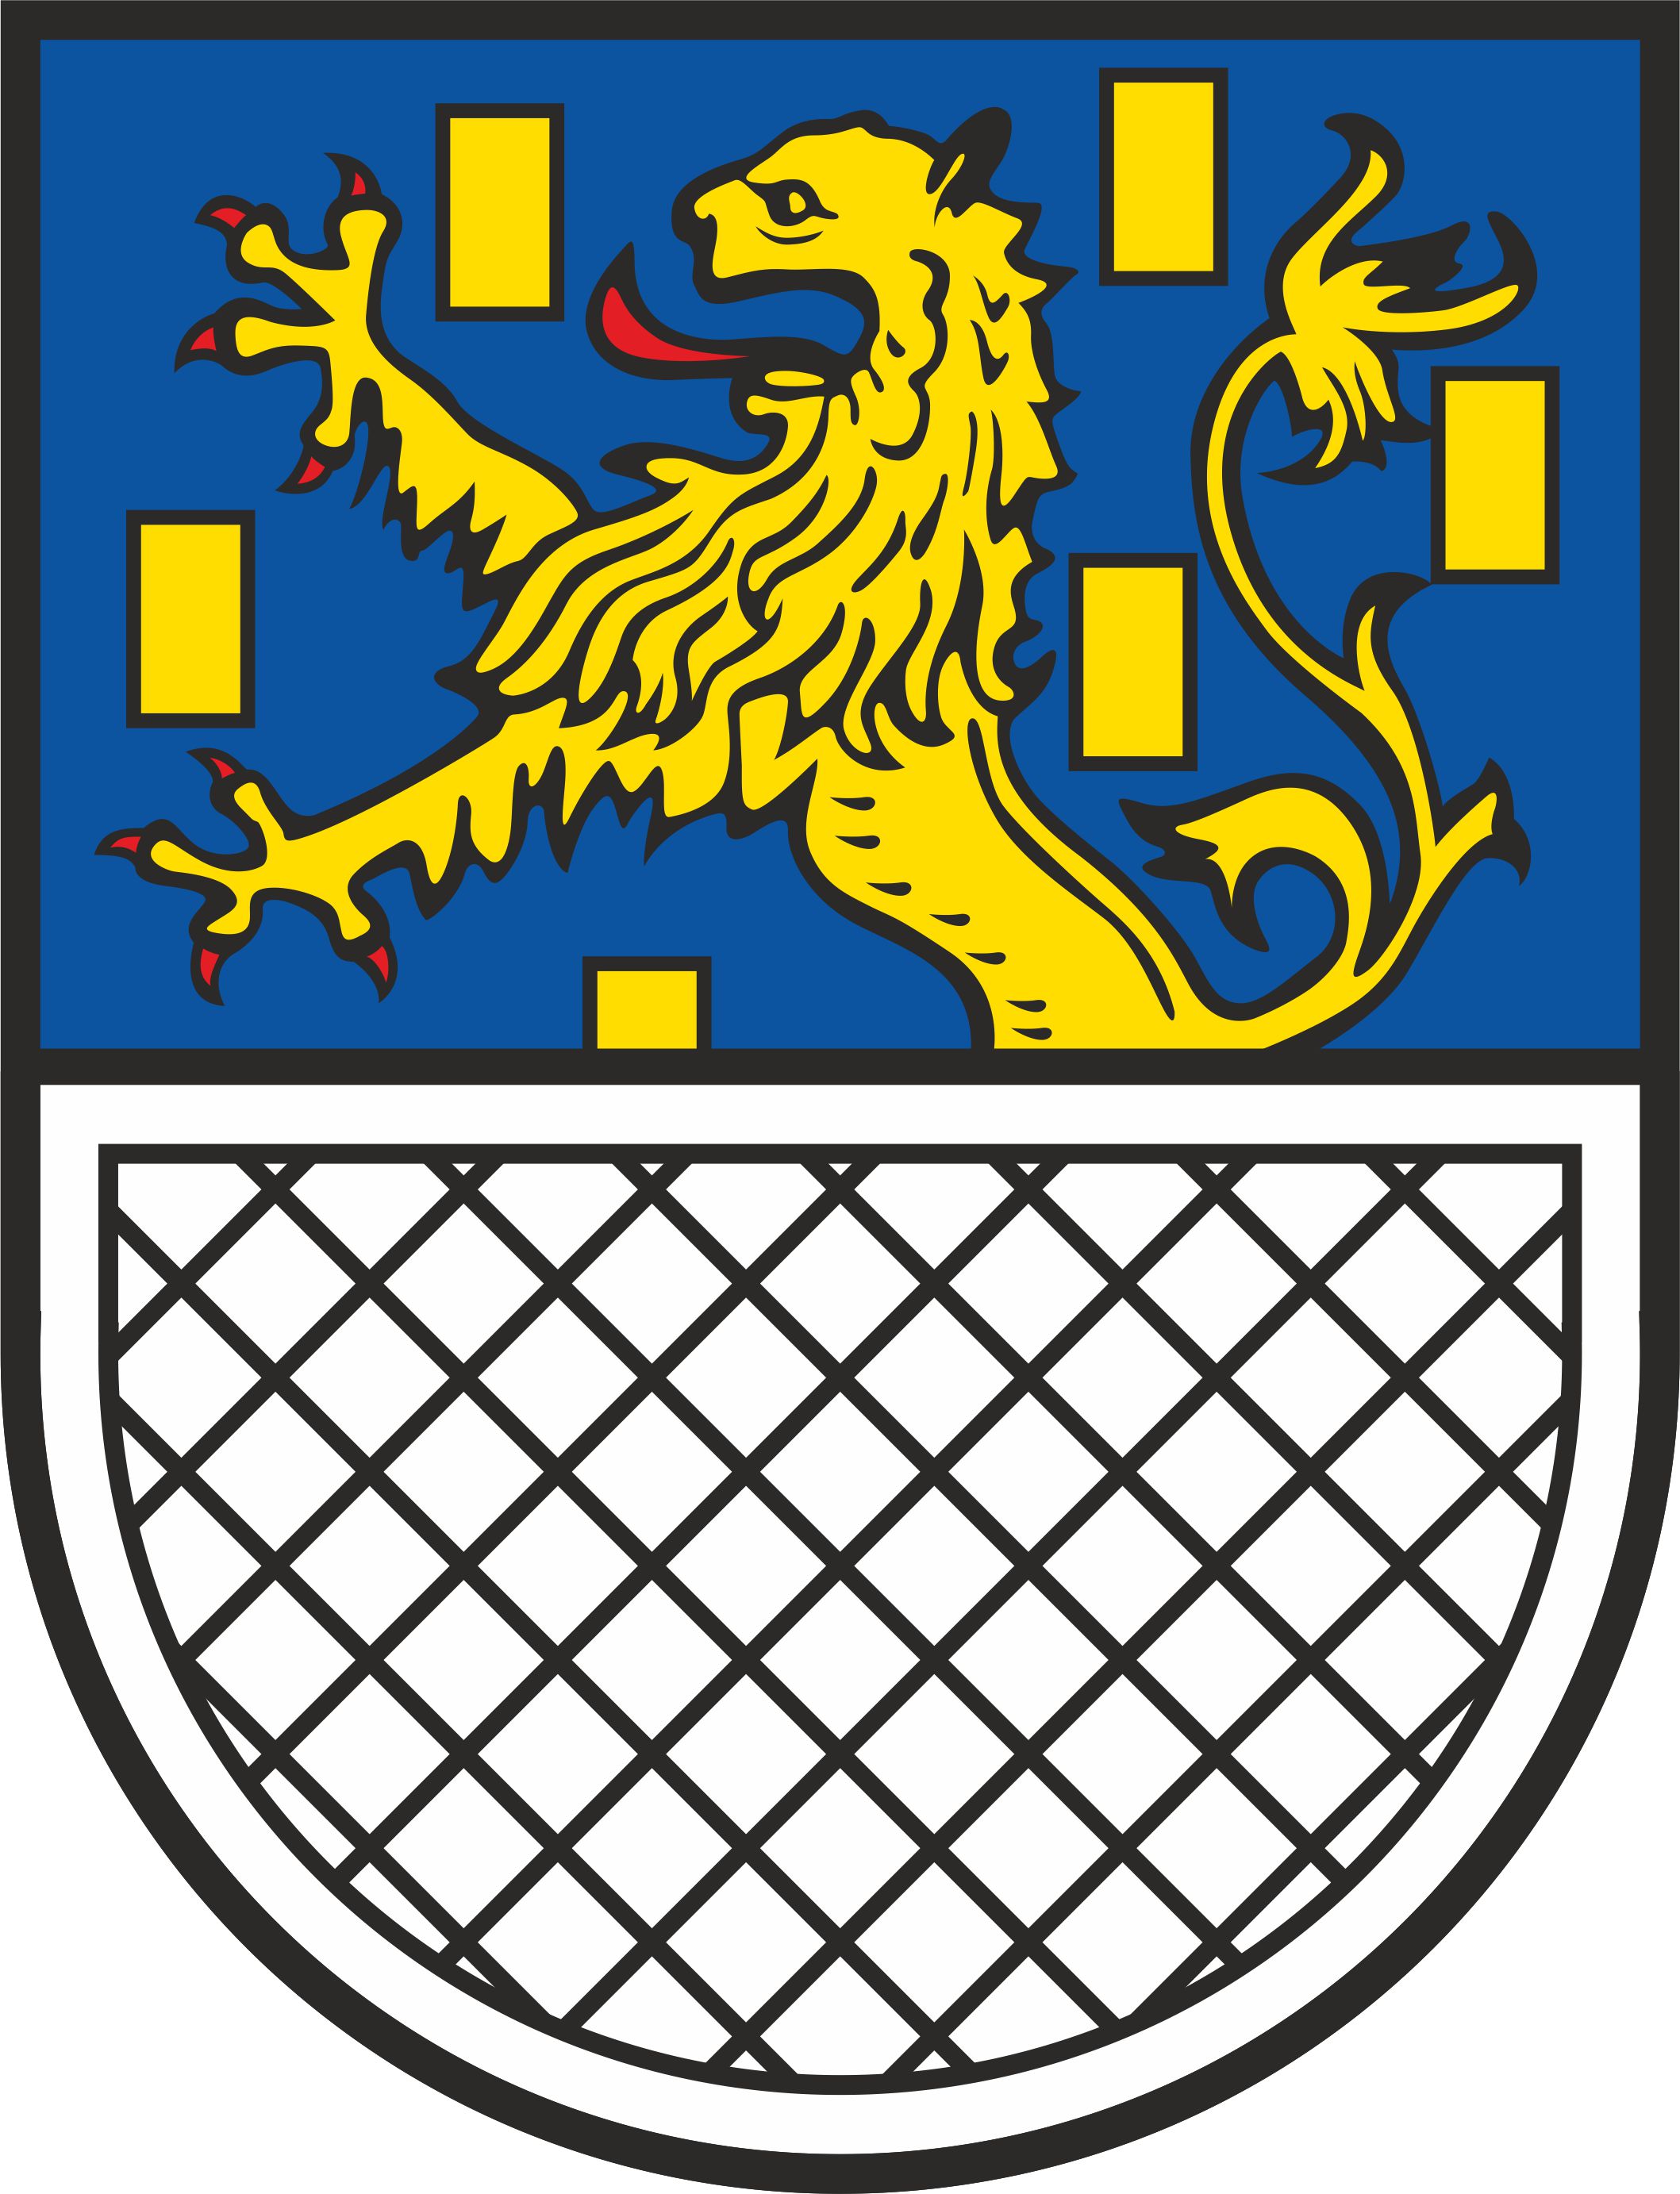 Wappen Nassau